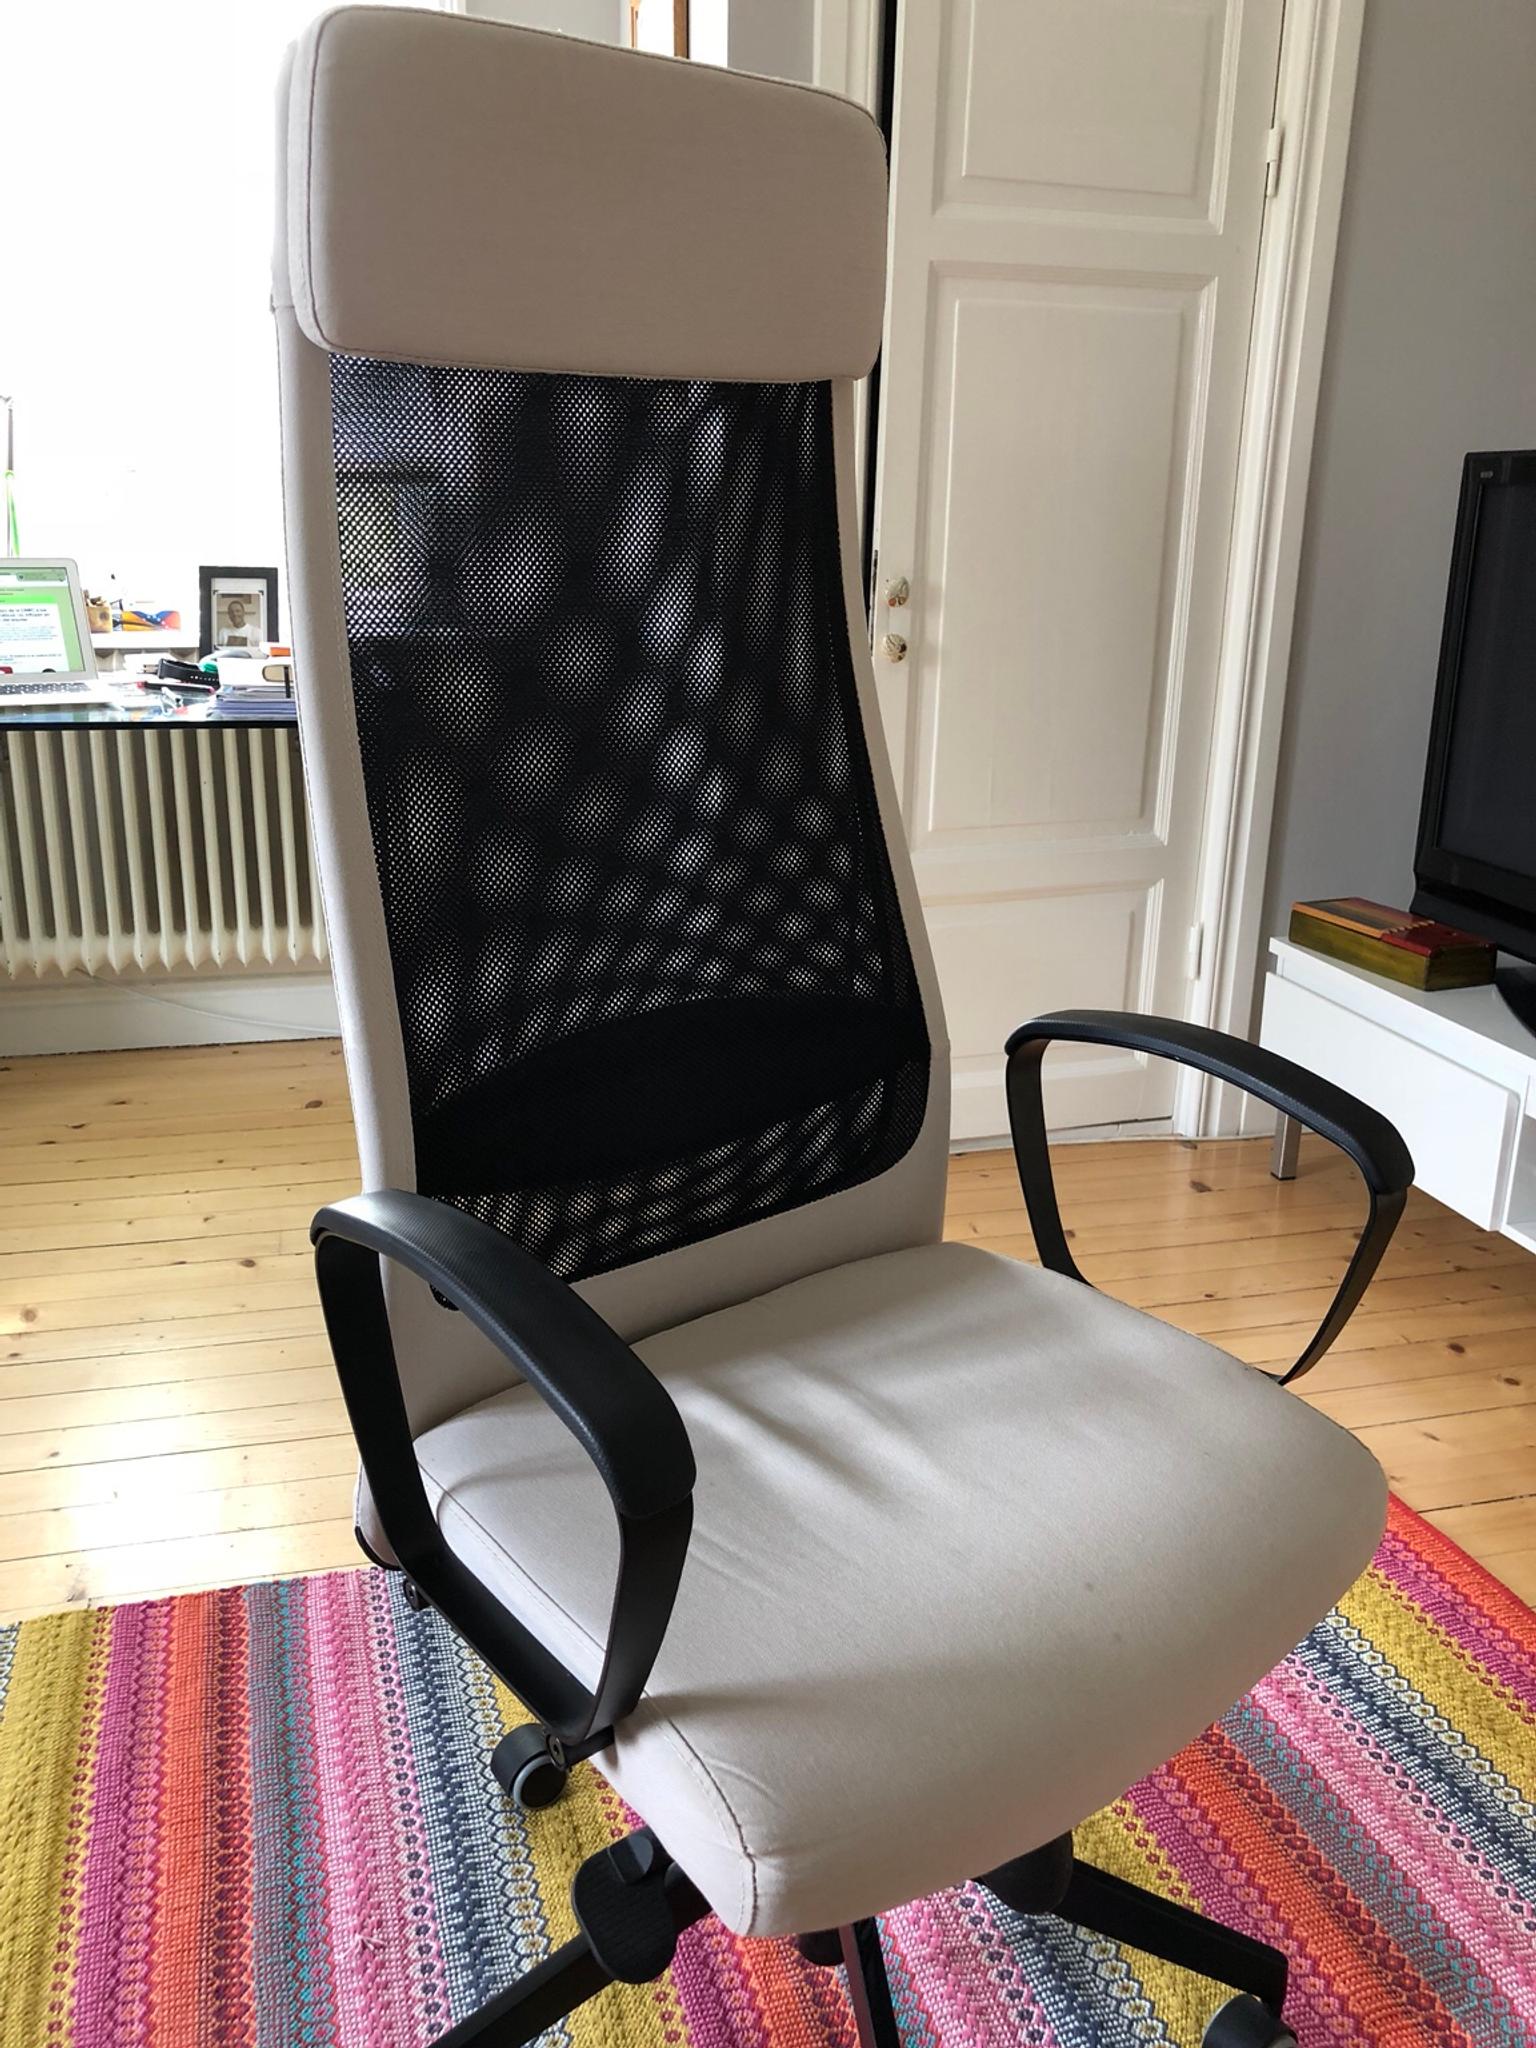 jÄrvfjÄllet  office chair in 12535 stockholm für gratis zum